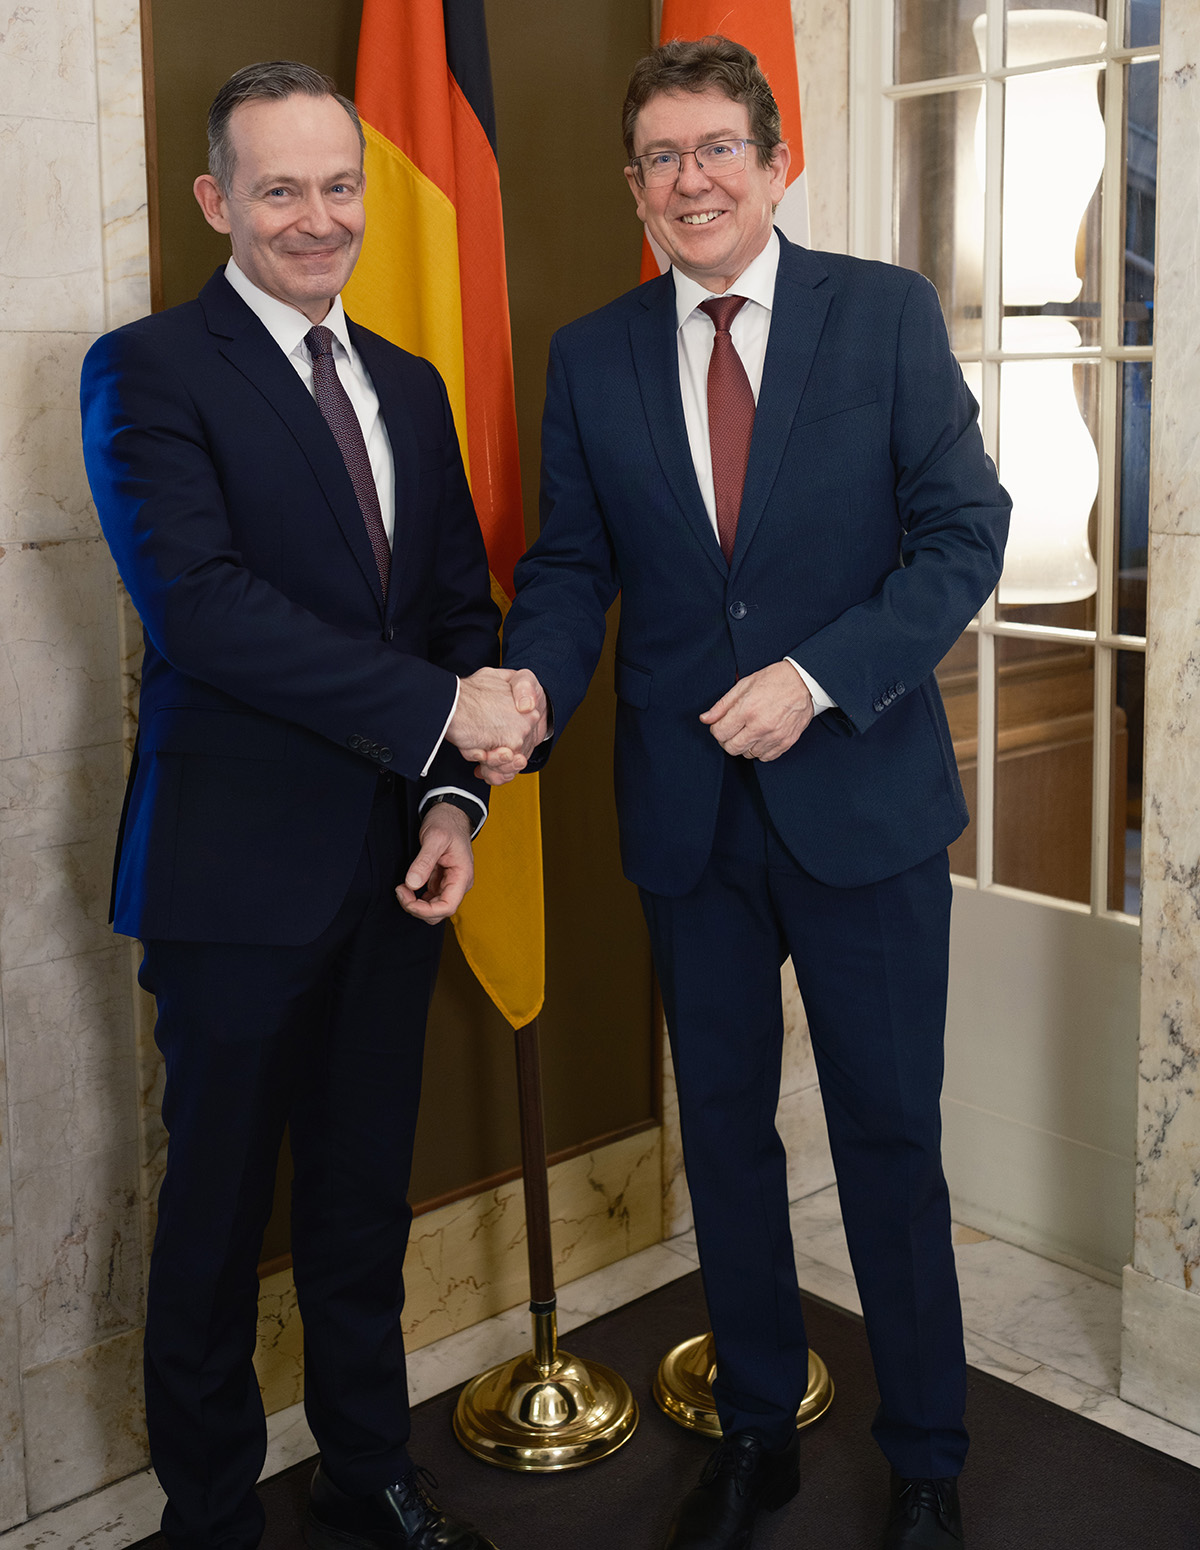 Il ministro dei trasporti Albert Rösti insieme al ministro tedesco per il Digitale e i Trasporti, Volker Wissing.